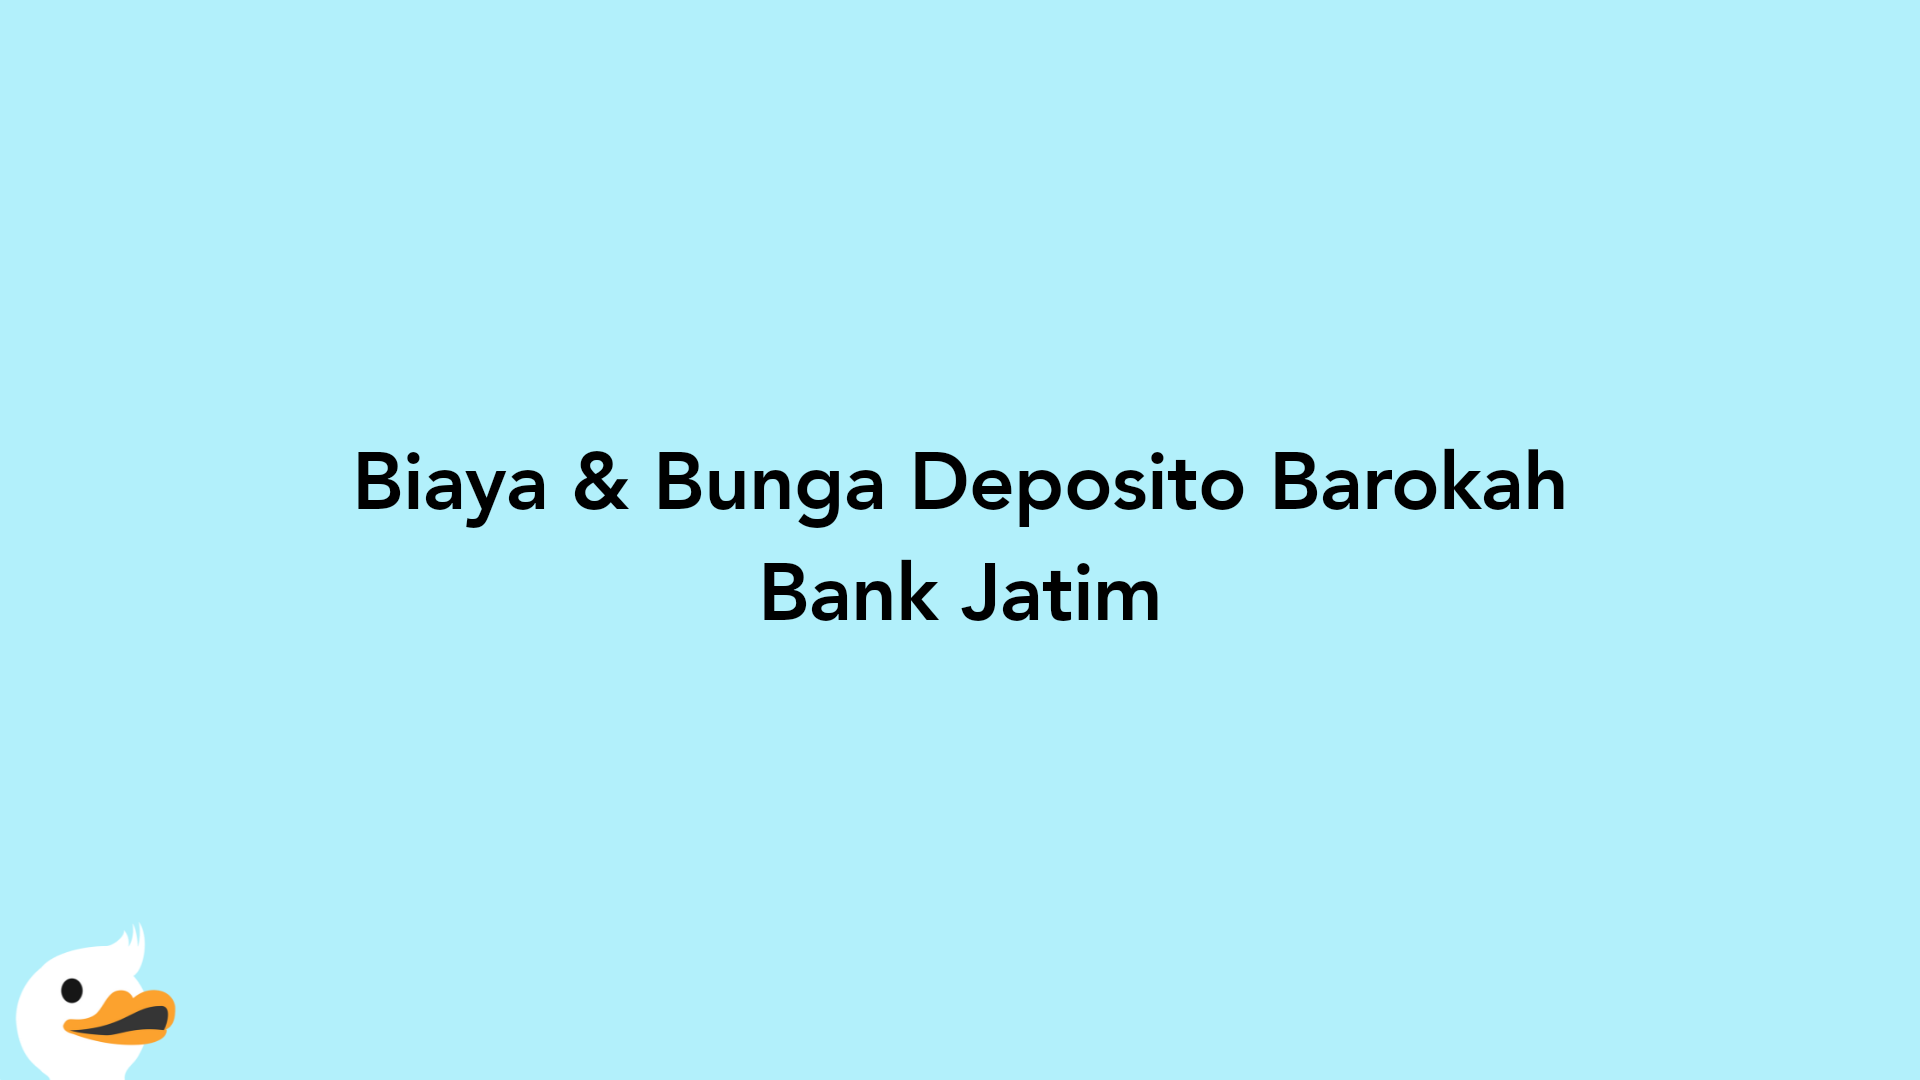 Biaya & Bunga Deposito Barokah Bank Jatim